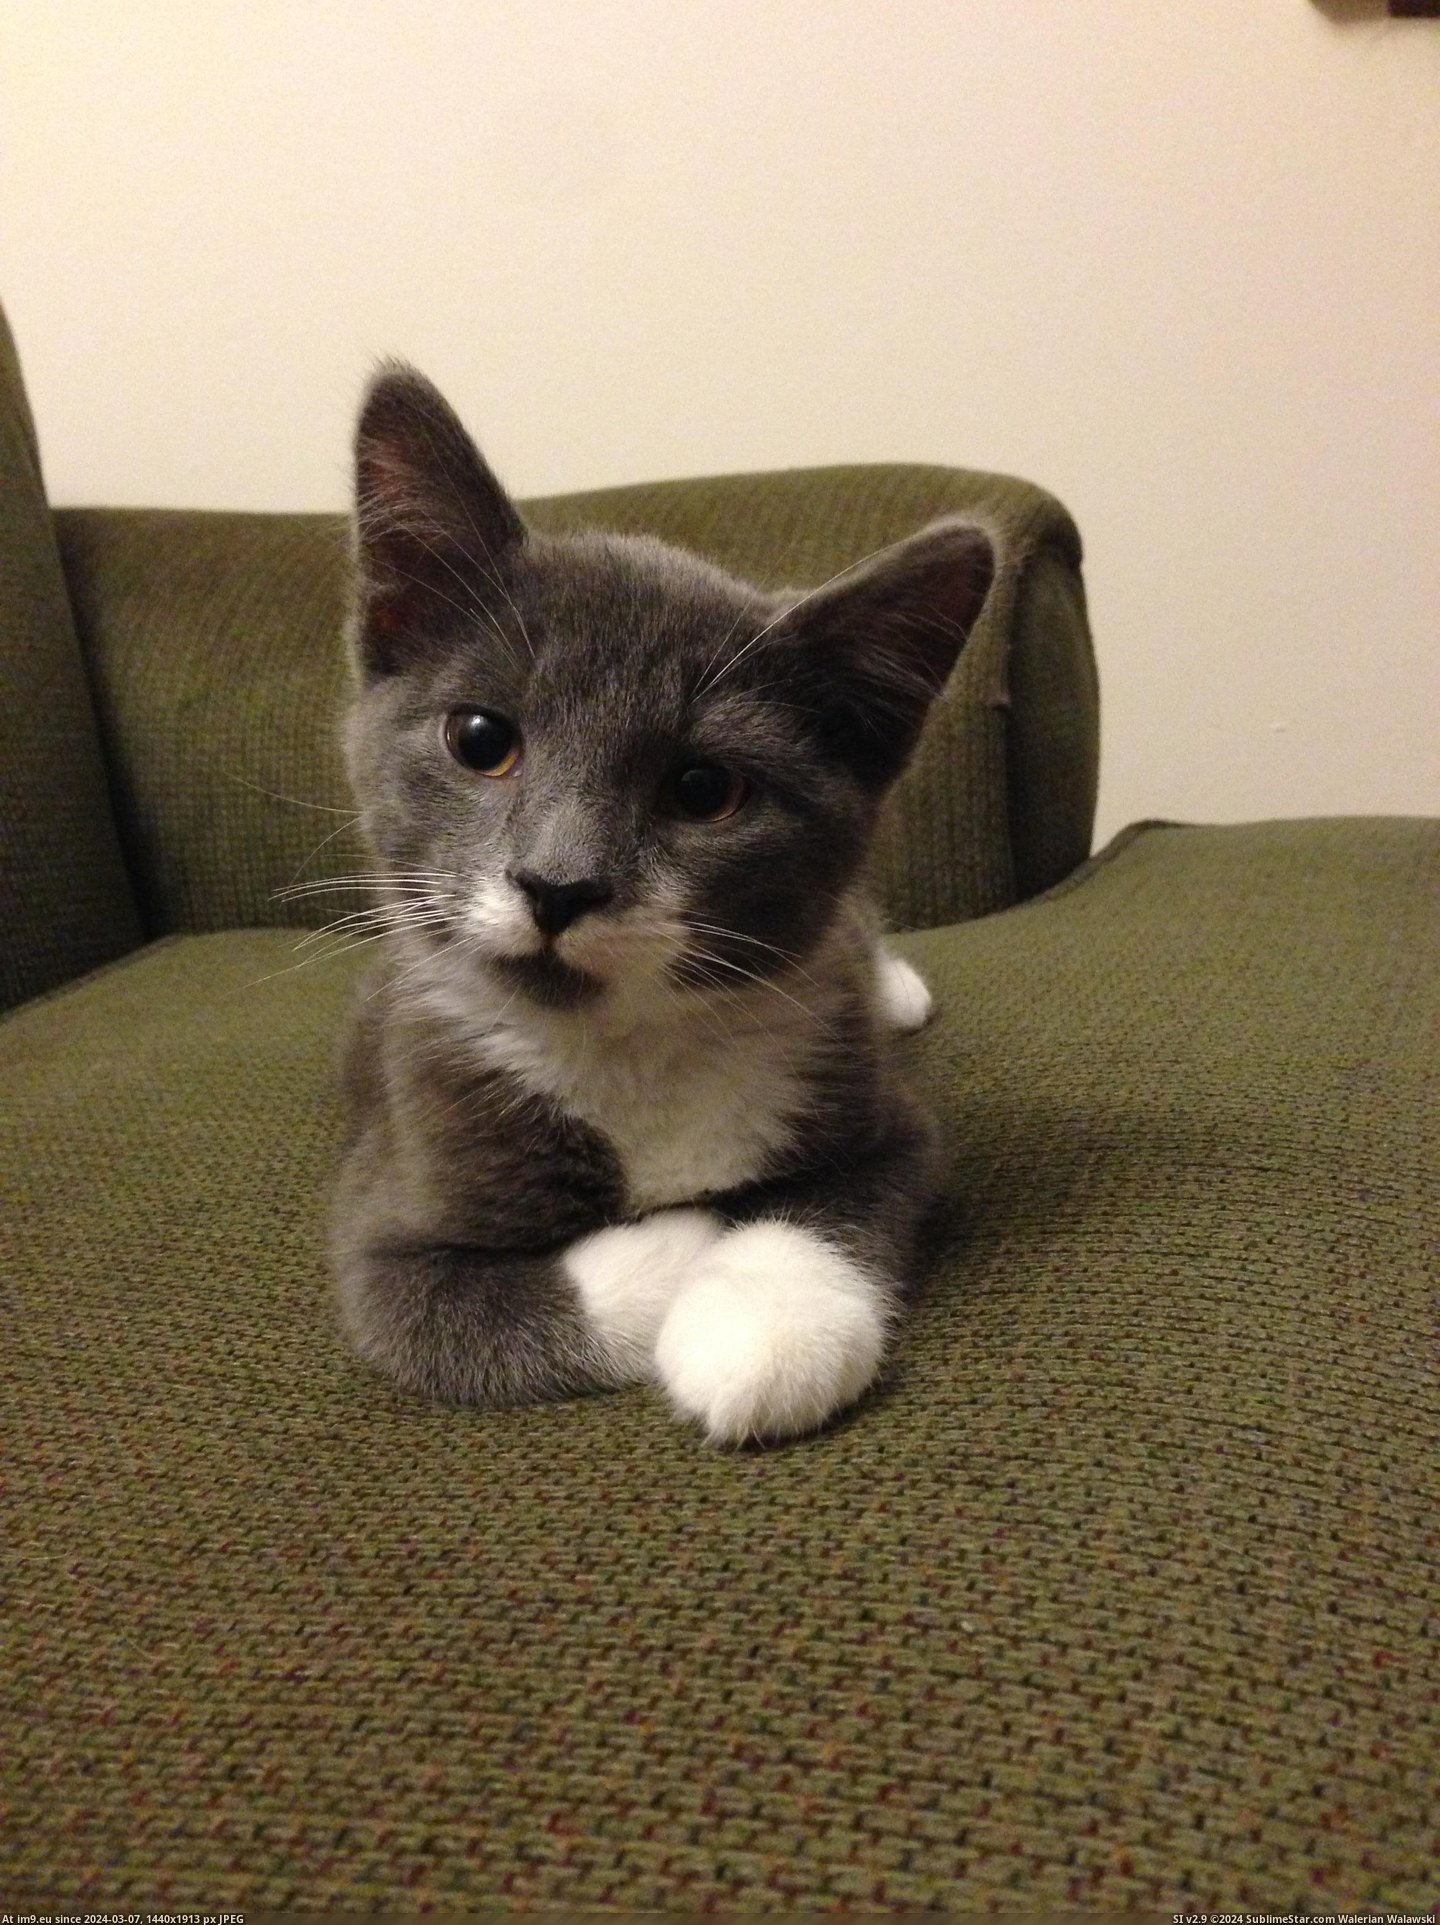 #Cat #New #Winston #Meet #Dapper [Aww] Reddit, meet Winston, my new dapper cat. 7 Pic. (Bild von album My r/AWW favs))